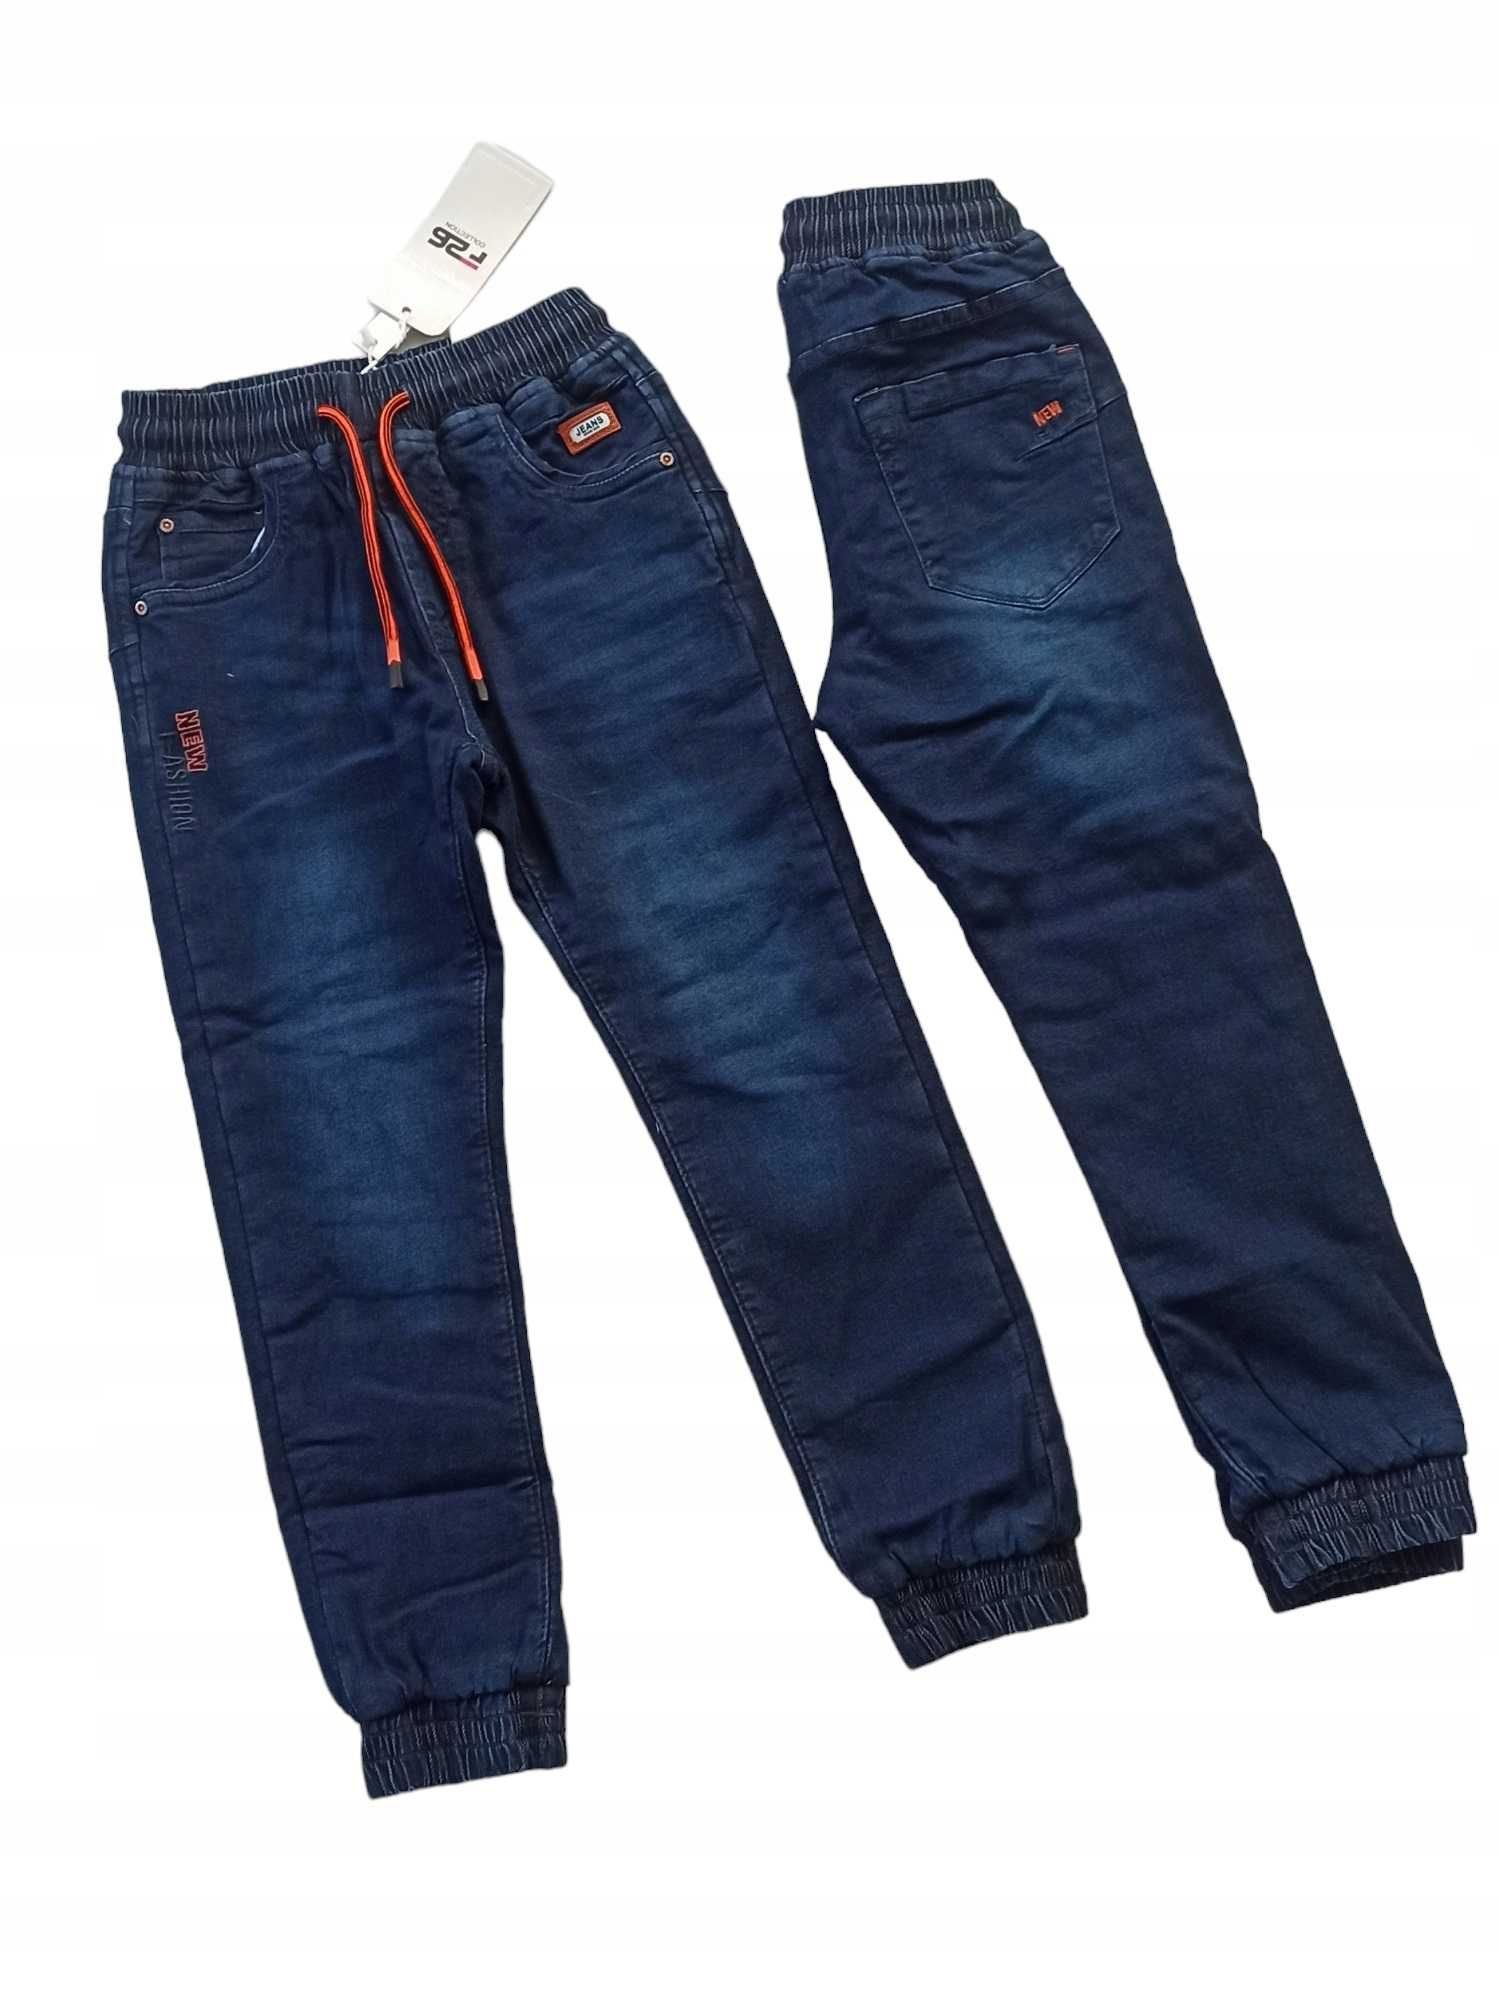 Spodnie Jeans miękkie elastyczne GUMA ocieplane polarem nowy r 122-128